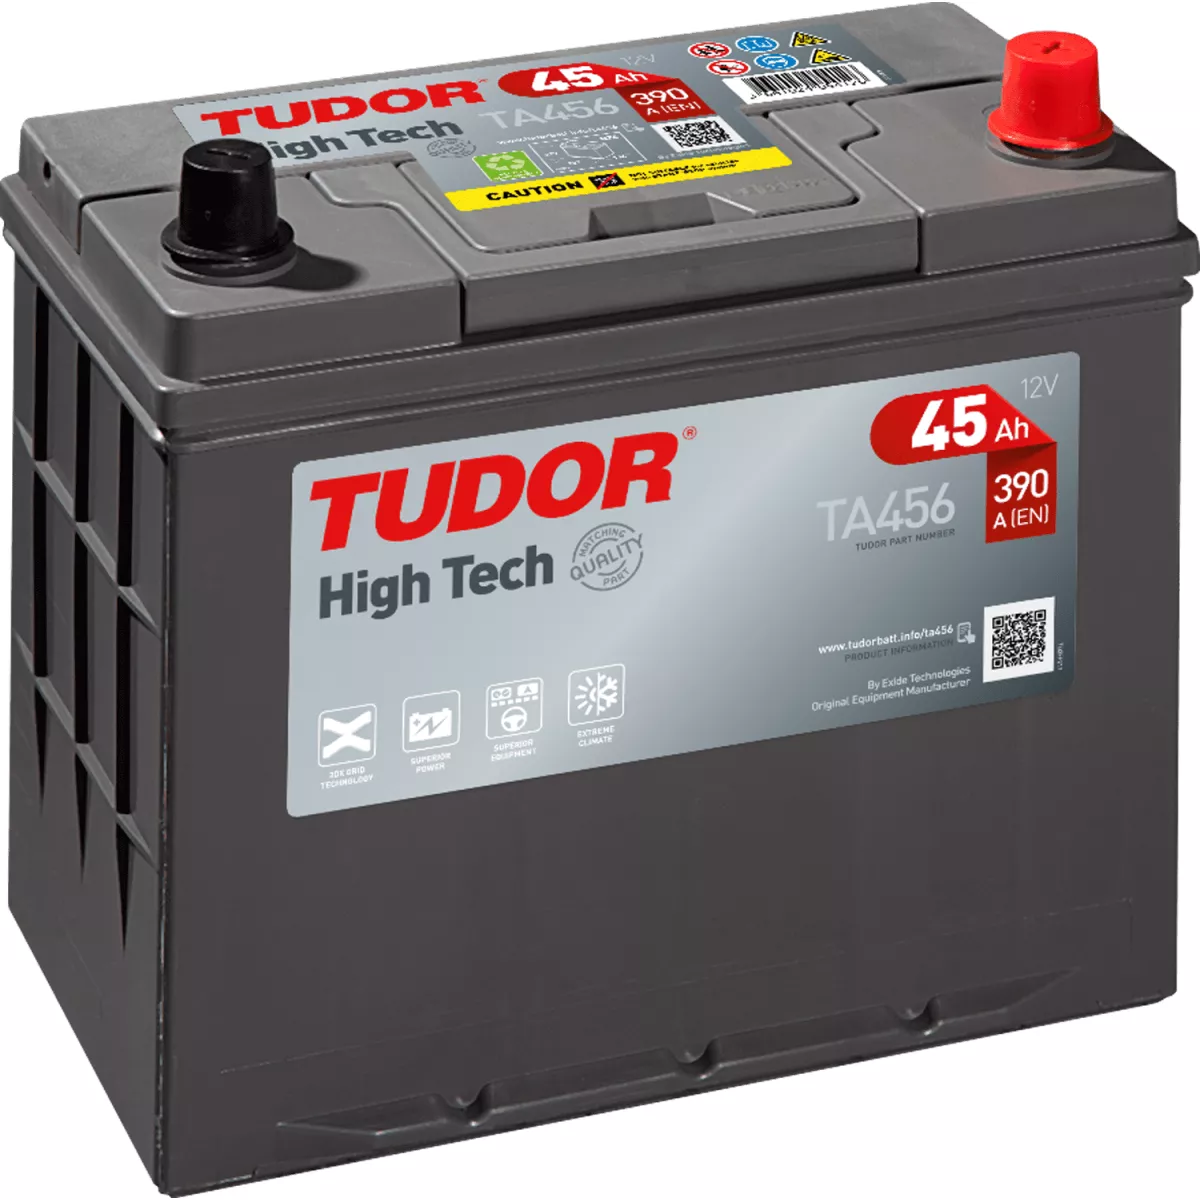 Tudor TG145A. LKW-Batterie Tudor 145Ah 12V